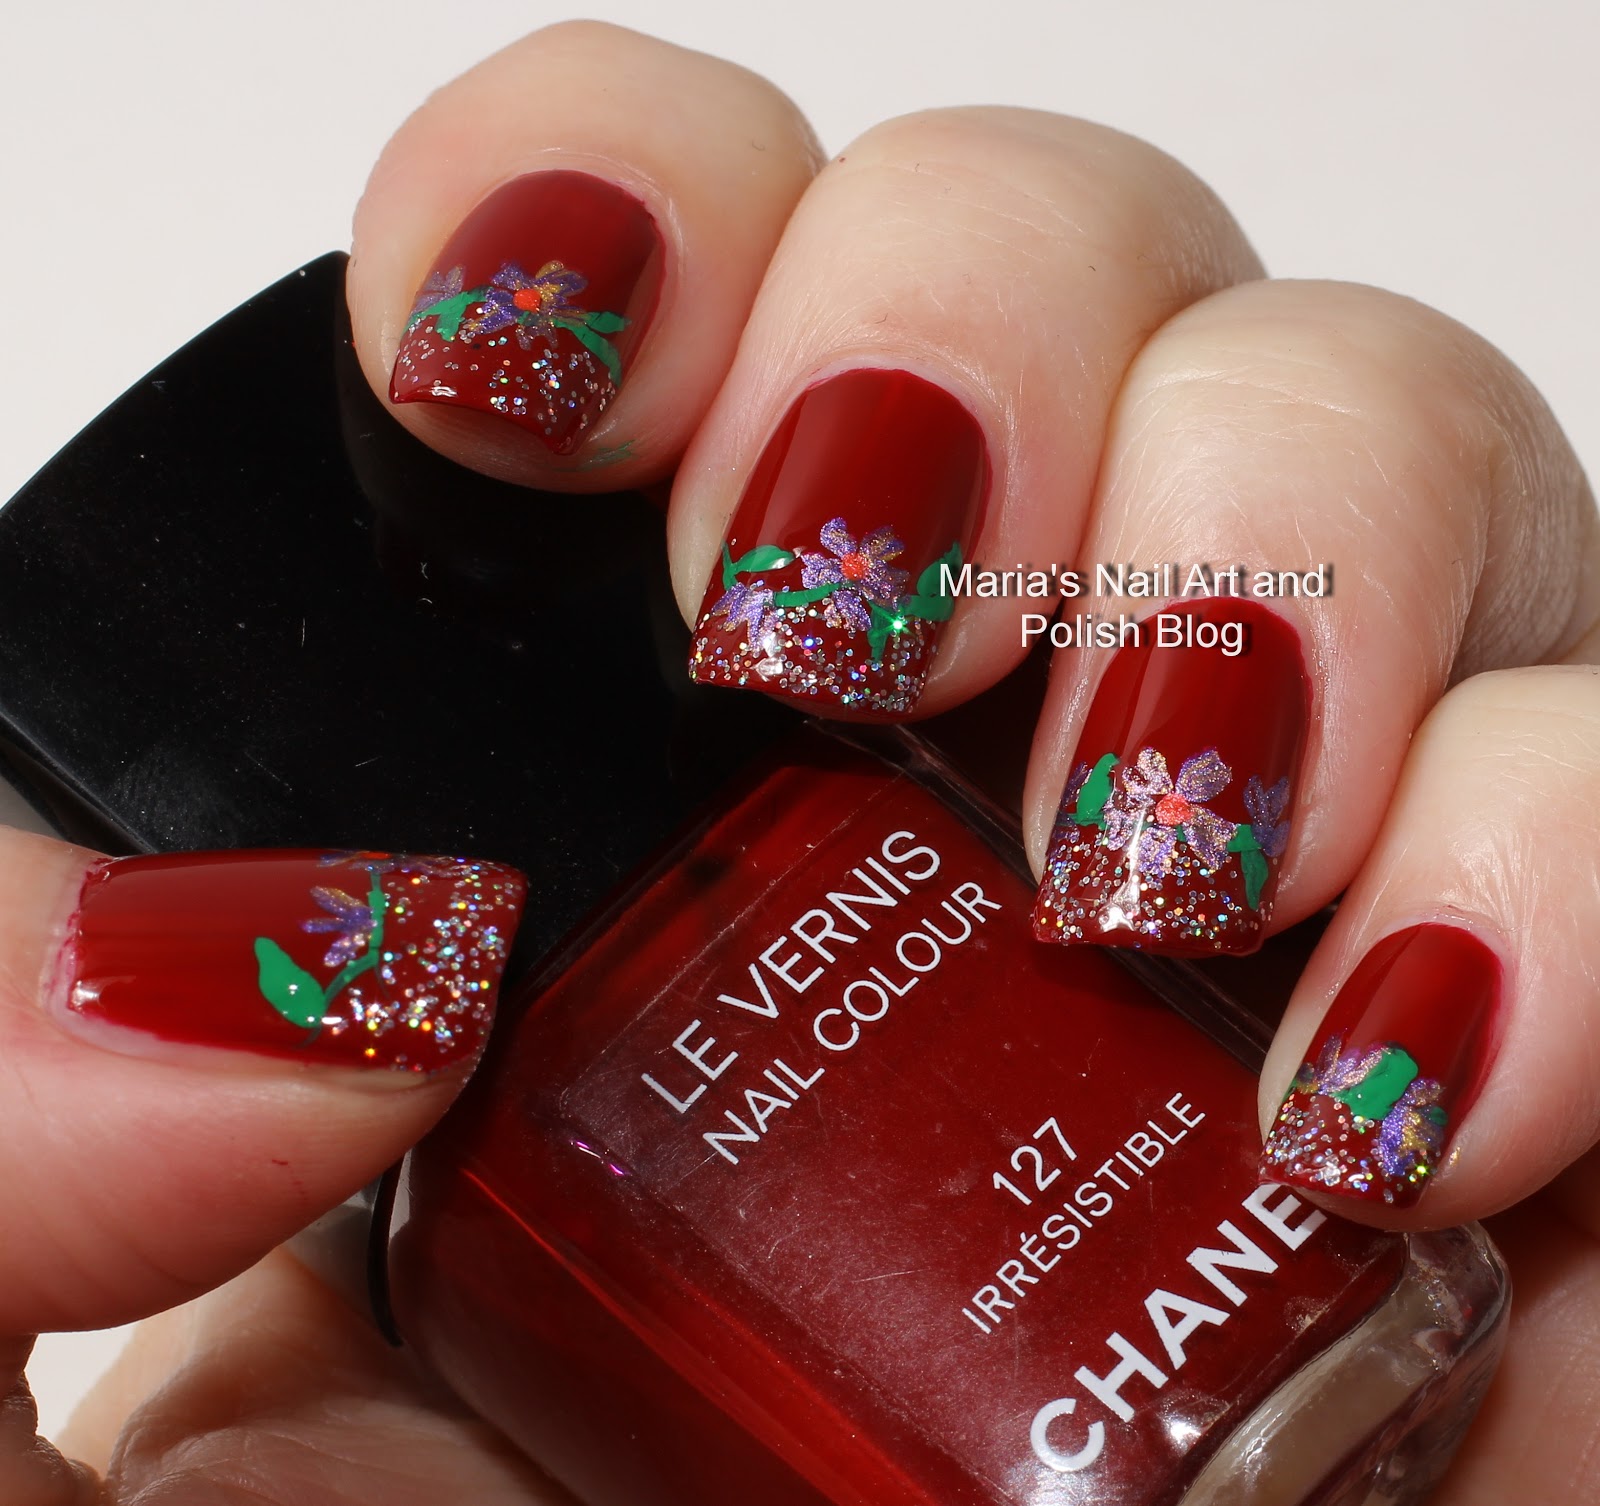 Marias Nail Art and Polish Blog: Irresistible flowers - floral nail art